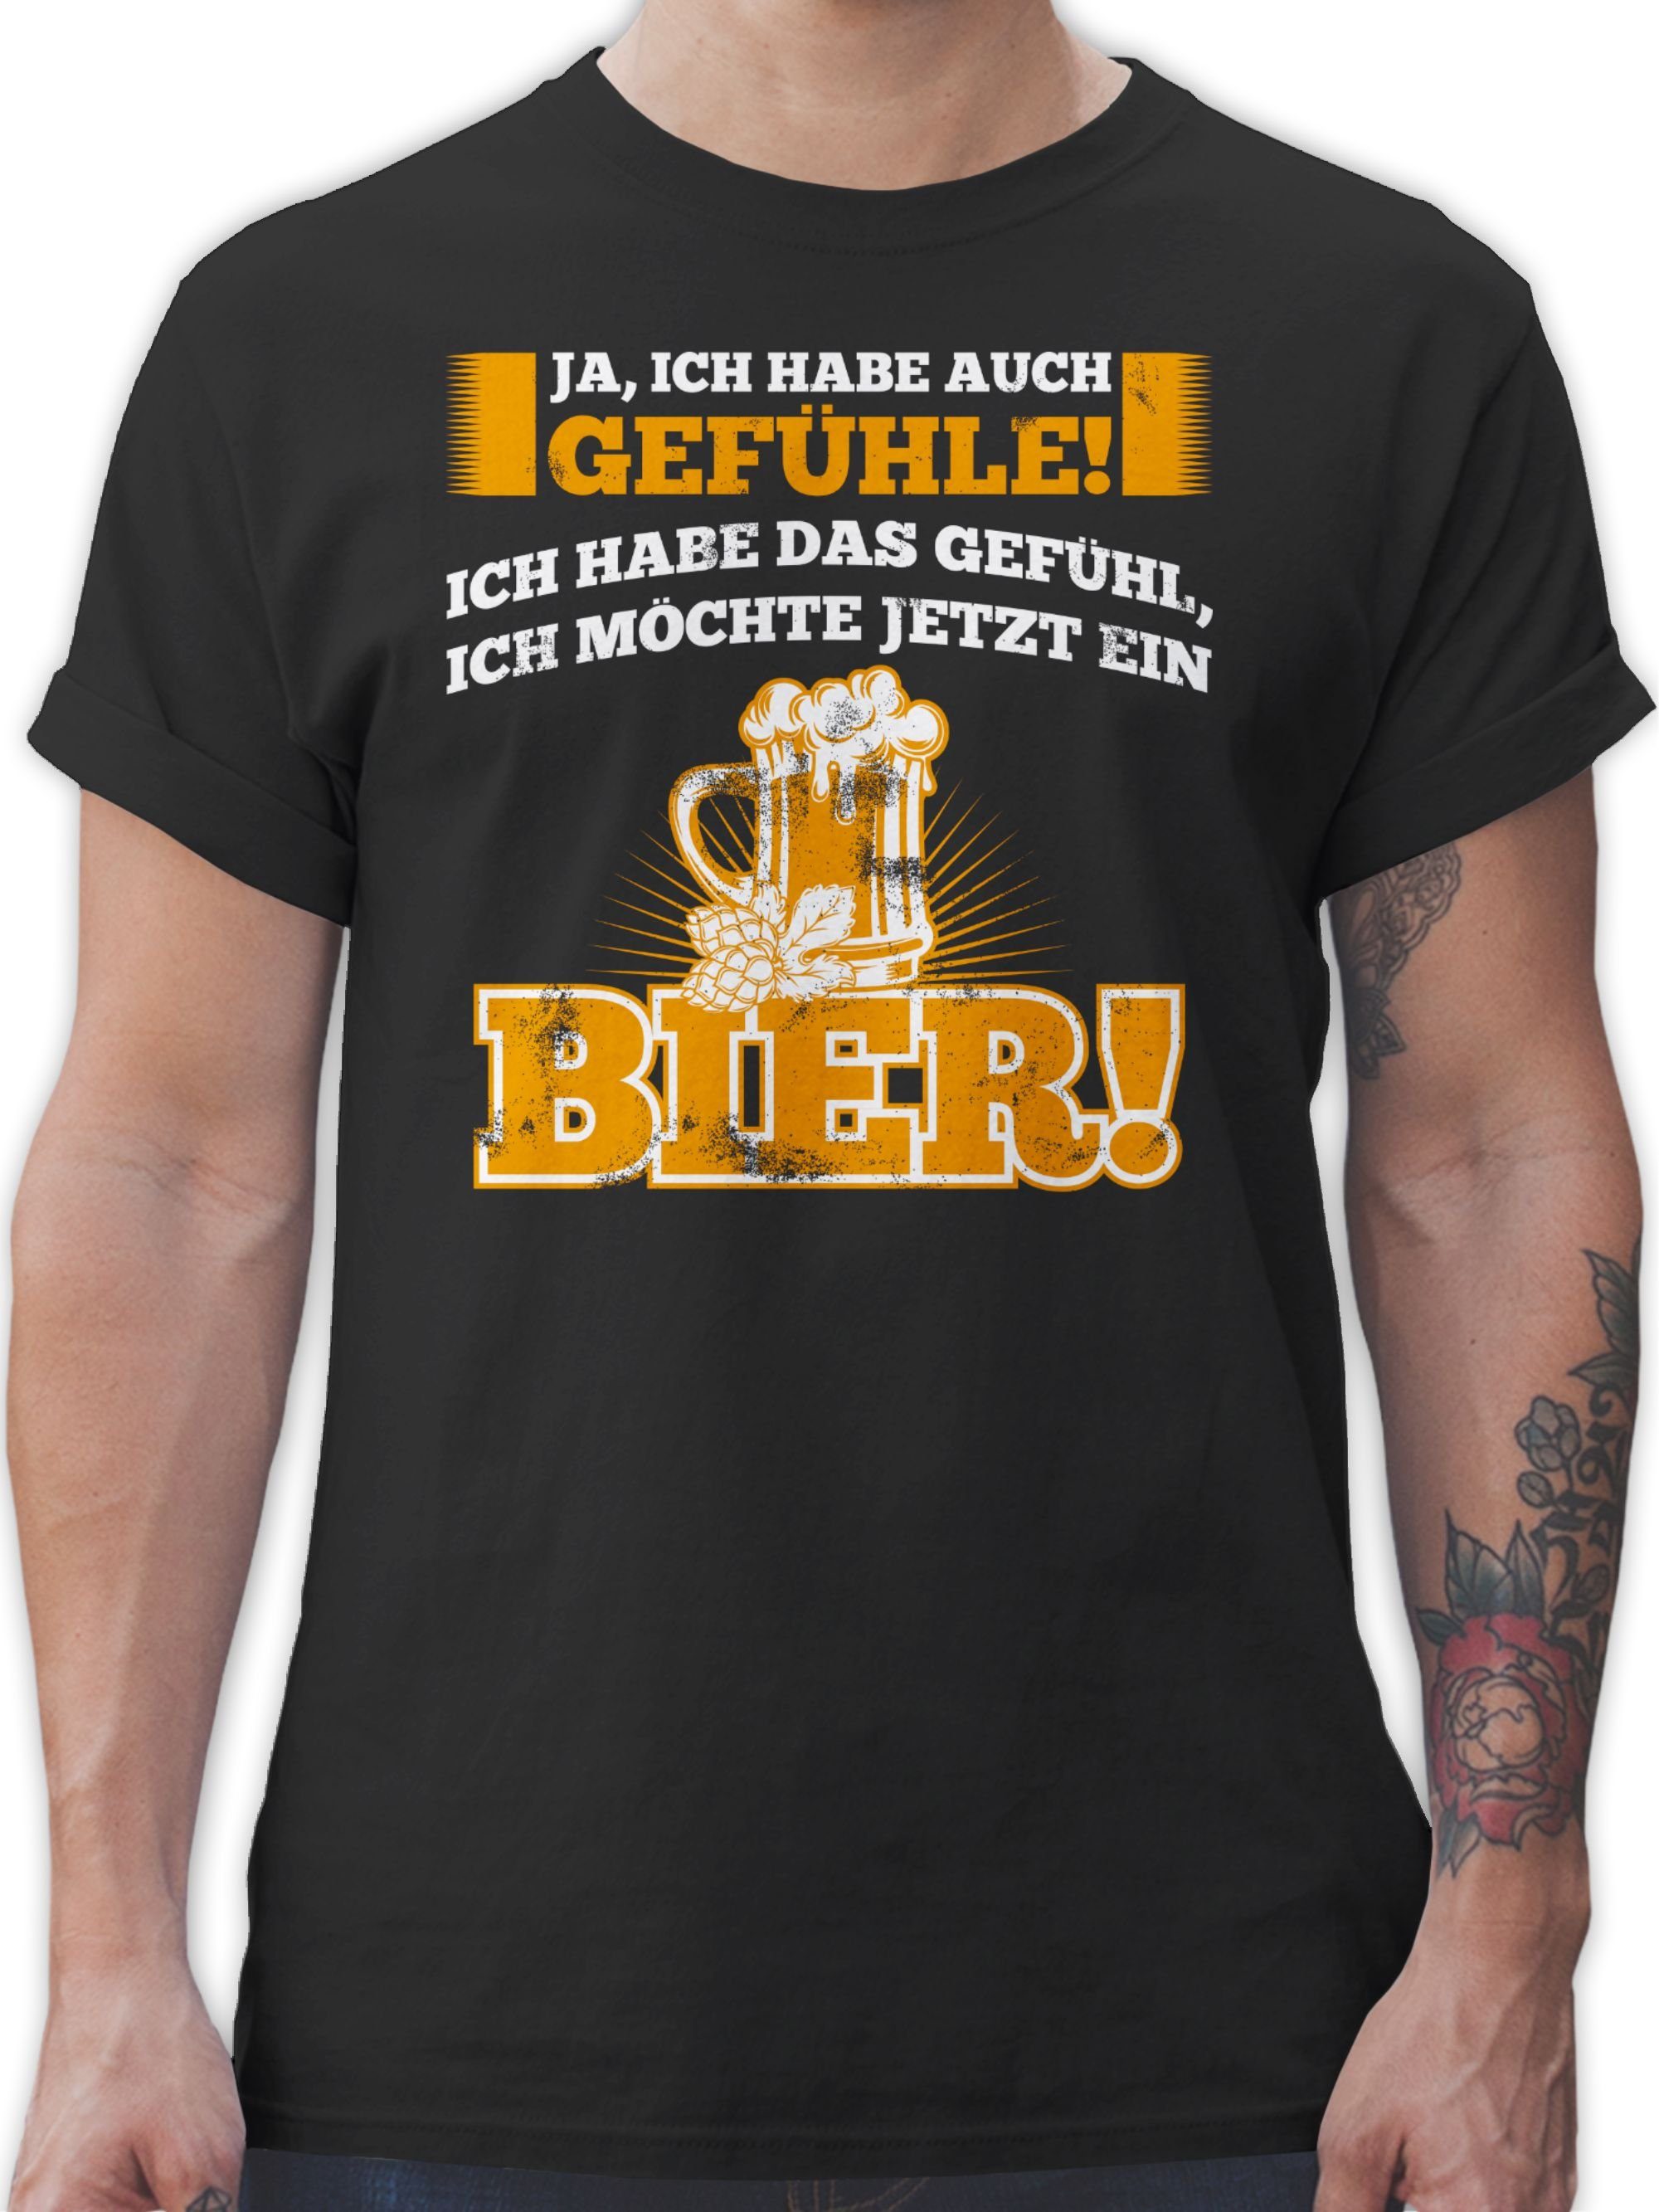 hochwertig und günstig Shirtracer T-Shirt Ja ich habe auch mit Sprüche - Statement Spruch Bier 1 Schwarz Gefühle